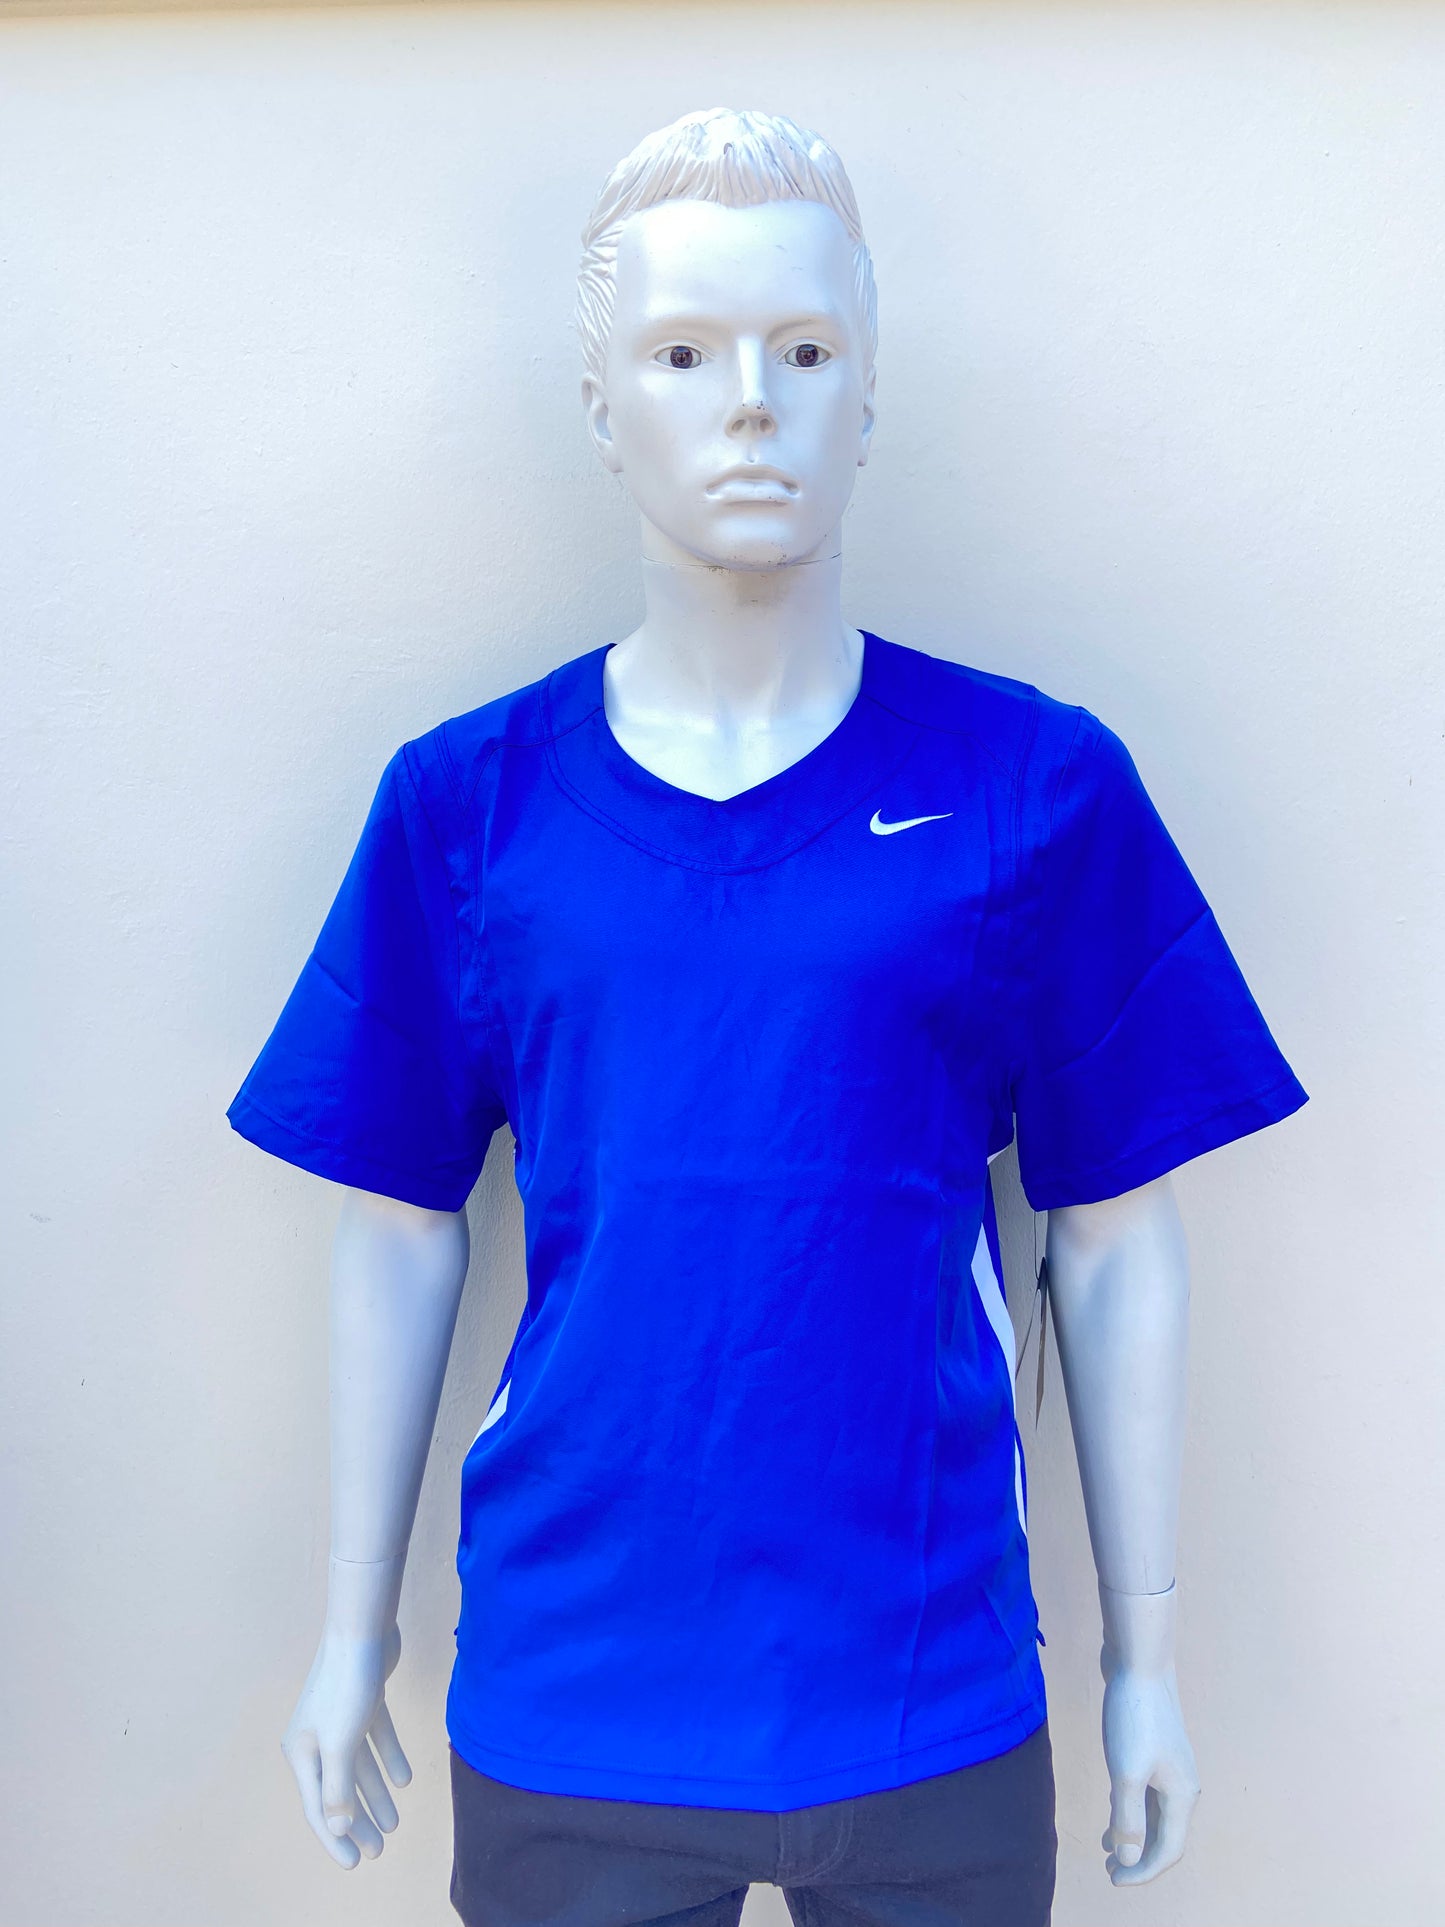 T-shirt Nike original azul rey con logotipo de la marca al lado.